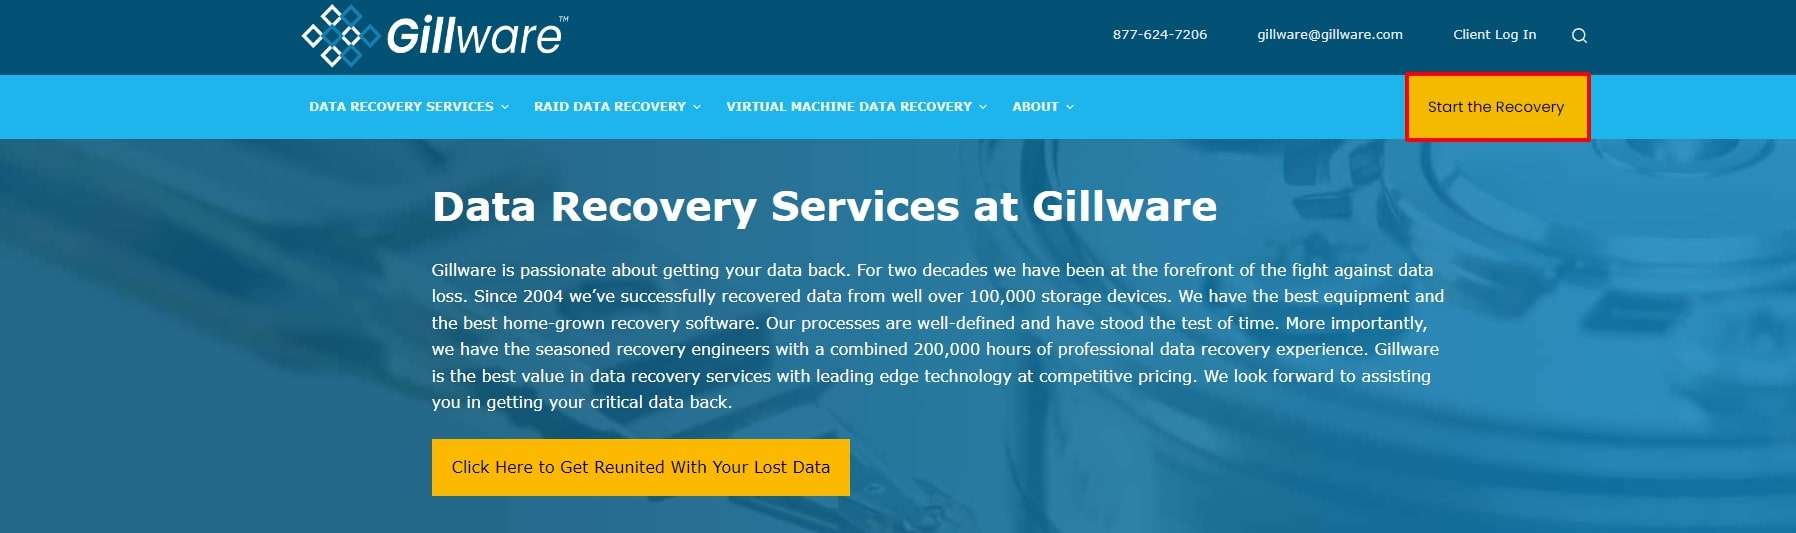 Applicazione di recupero dati Gillware 